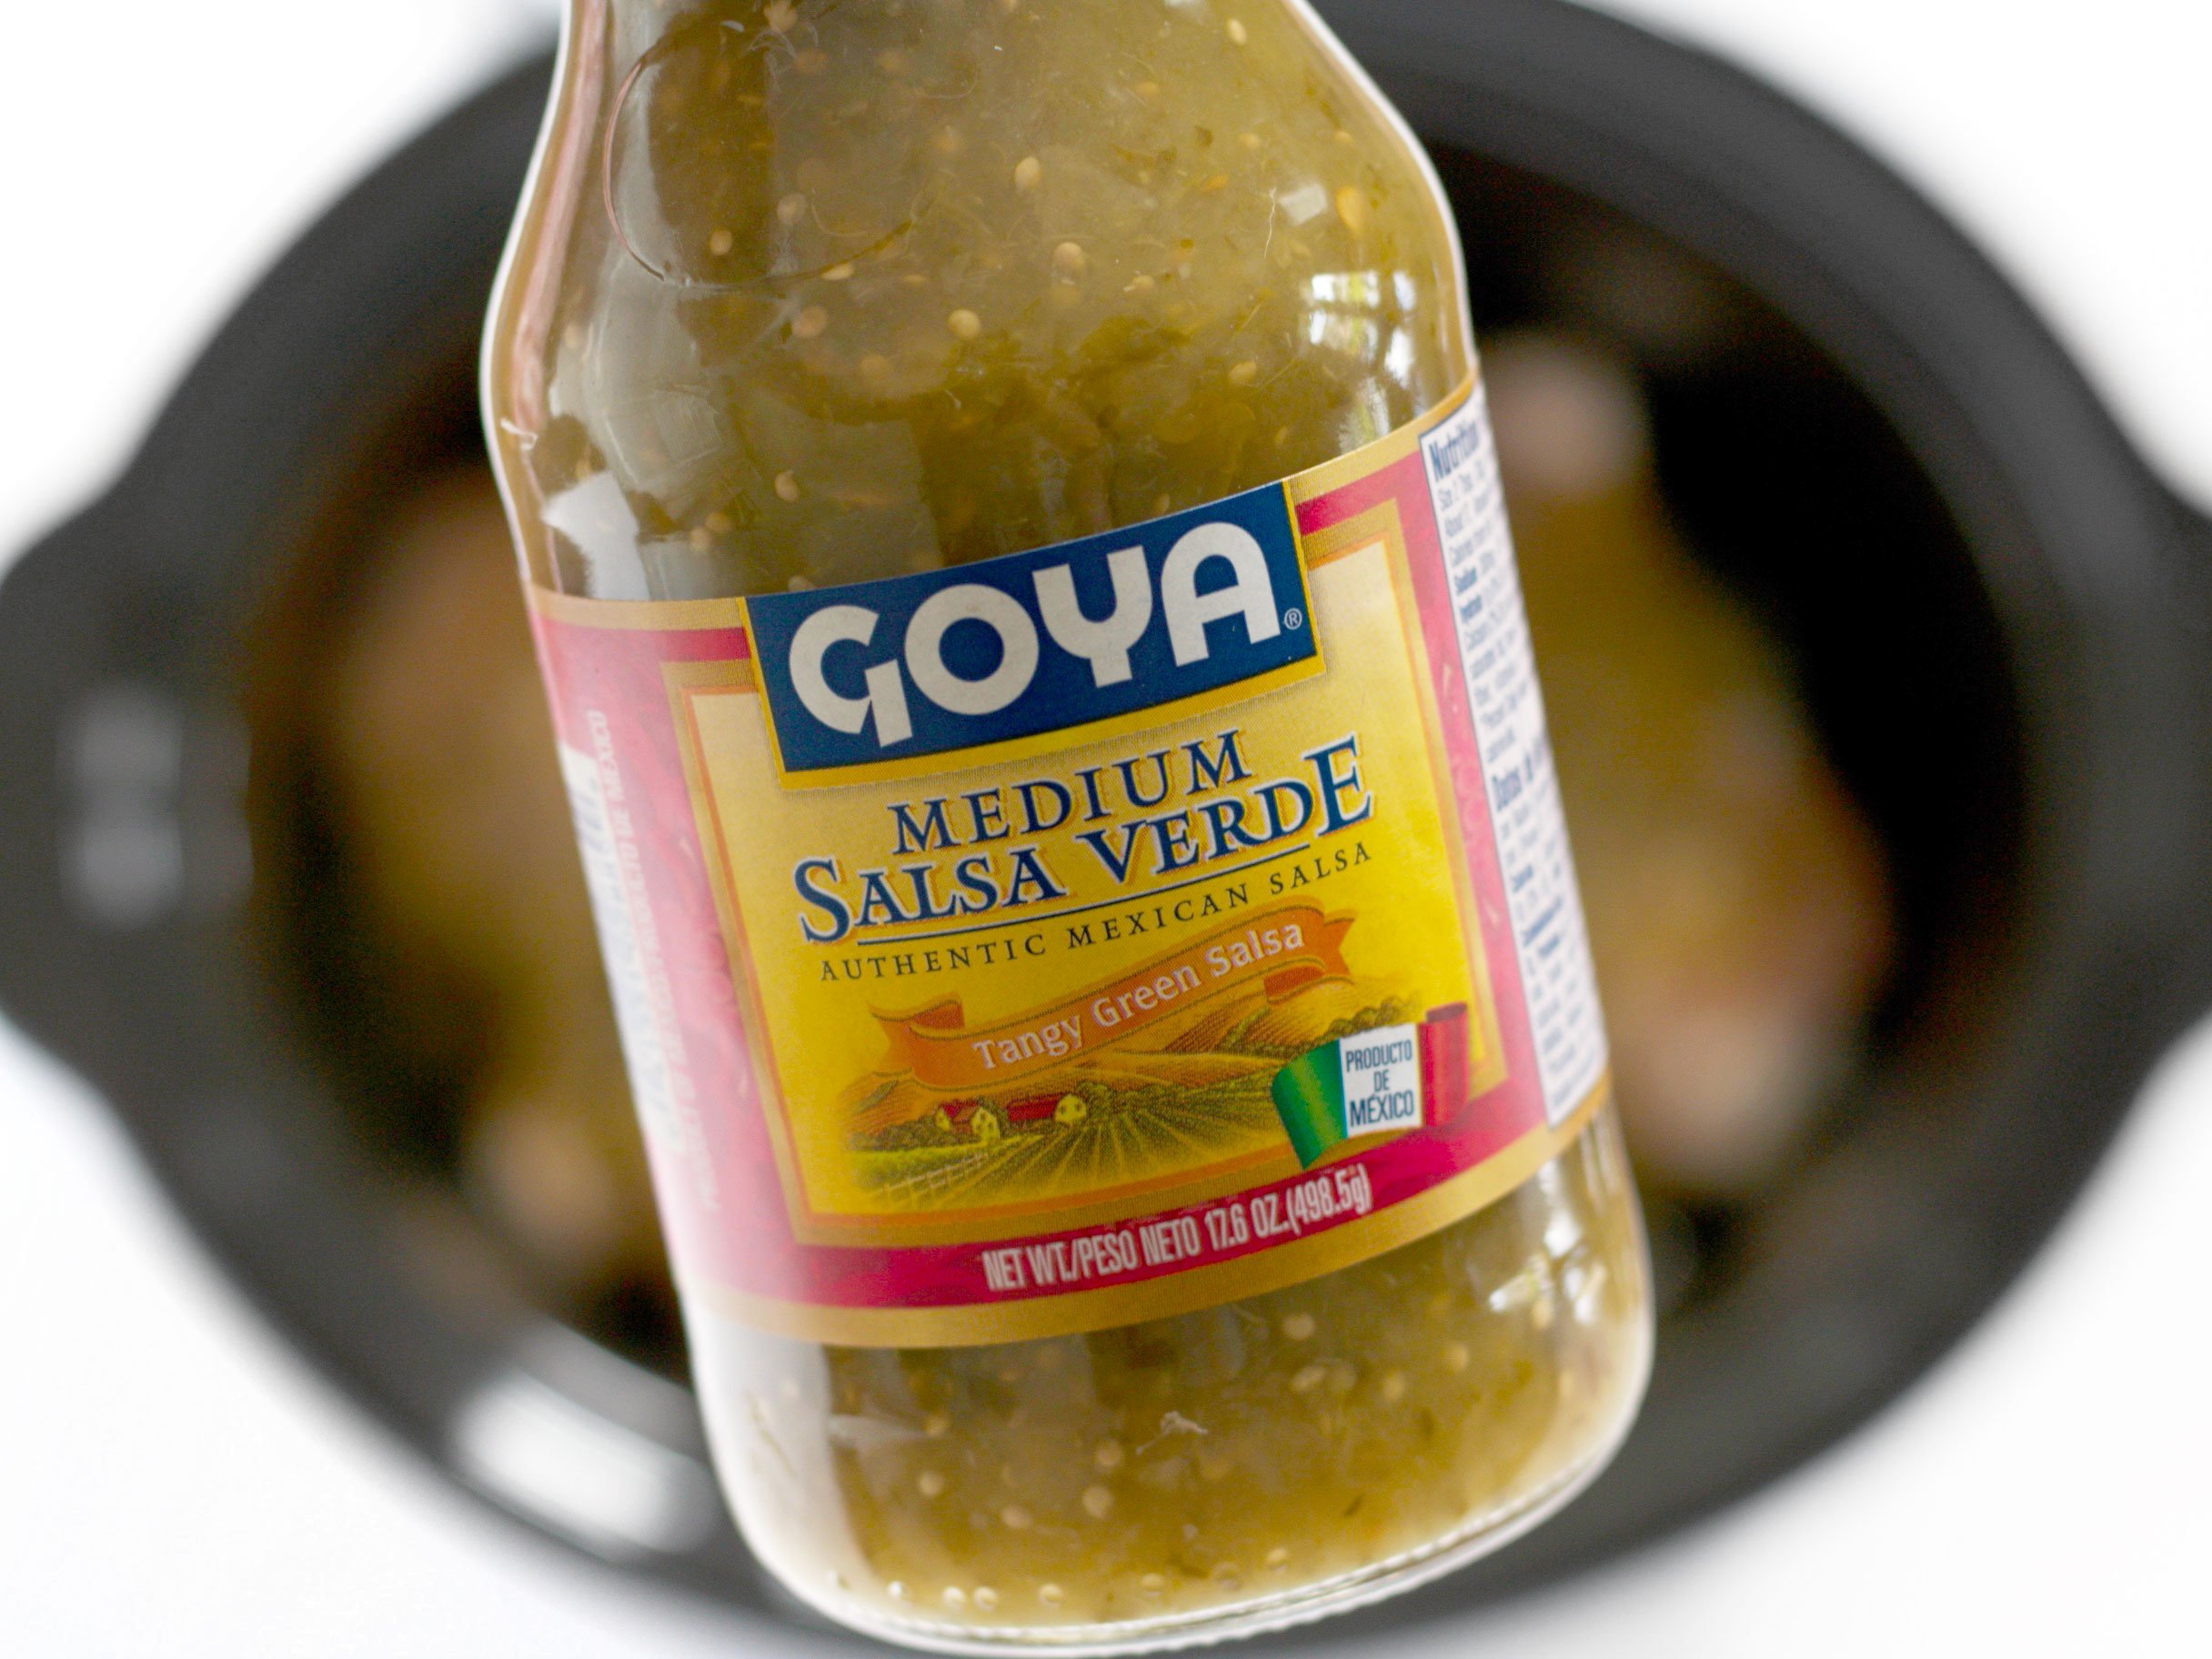 Goya Salsa Verde bottle